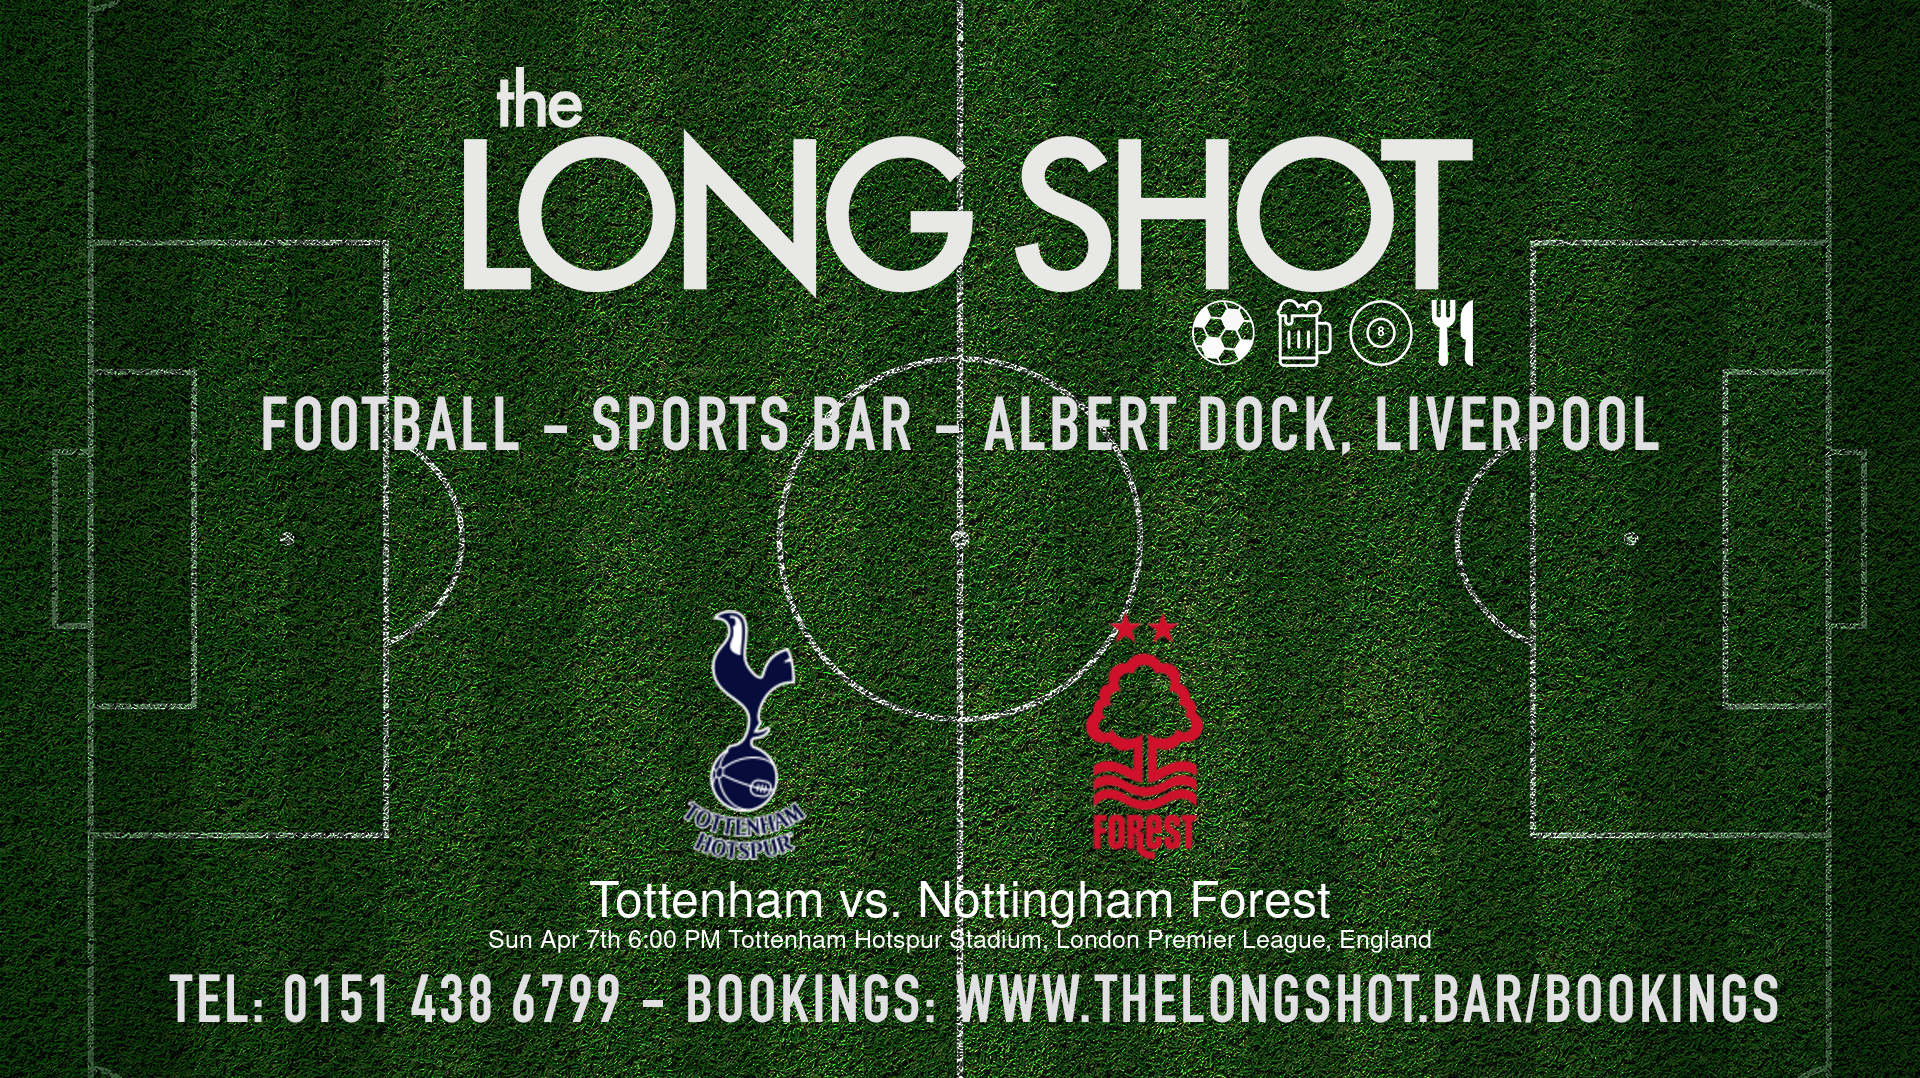 Event image - Tottenham vs. Nottingham Forest